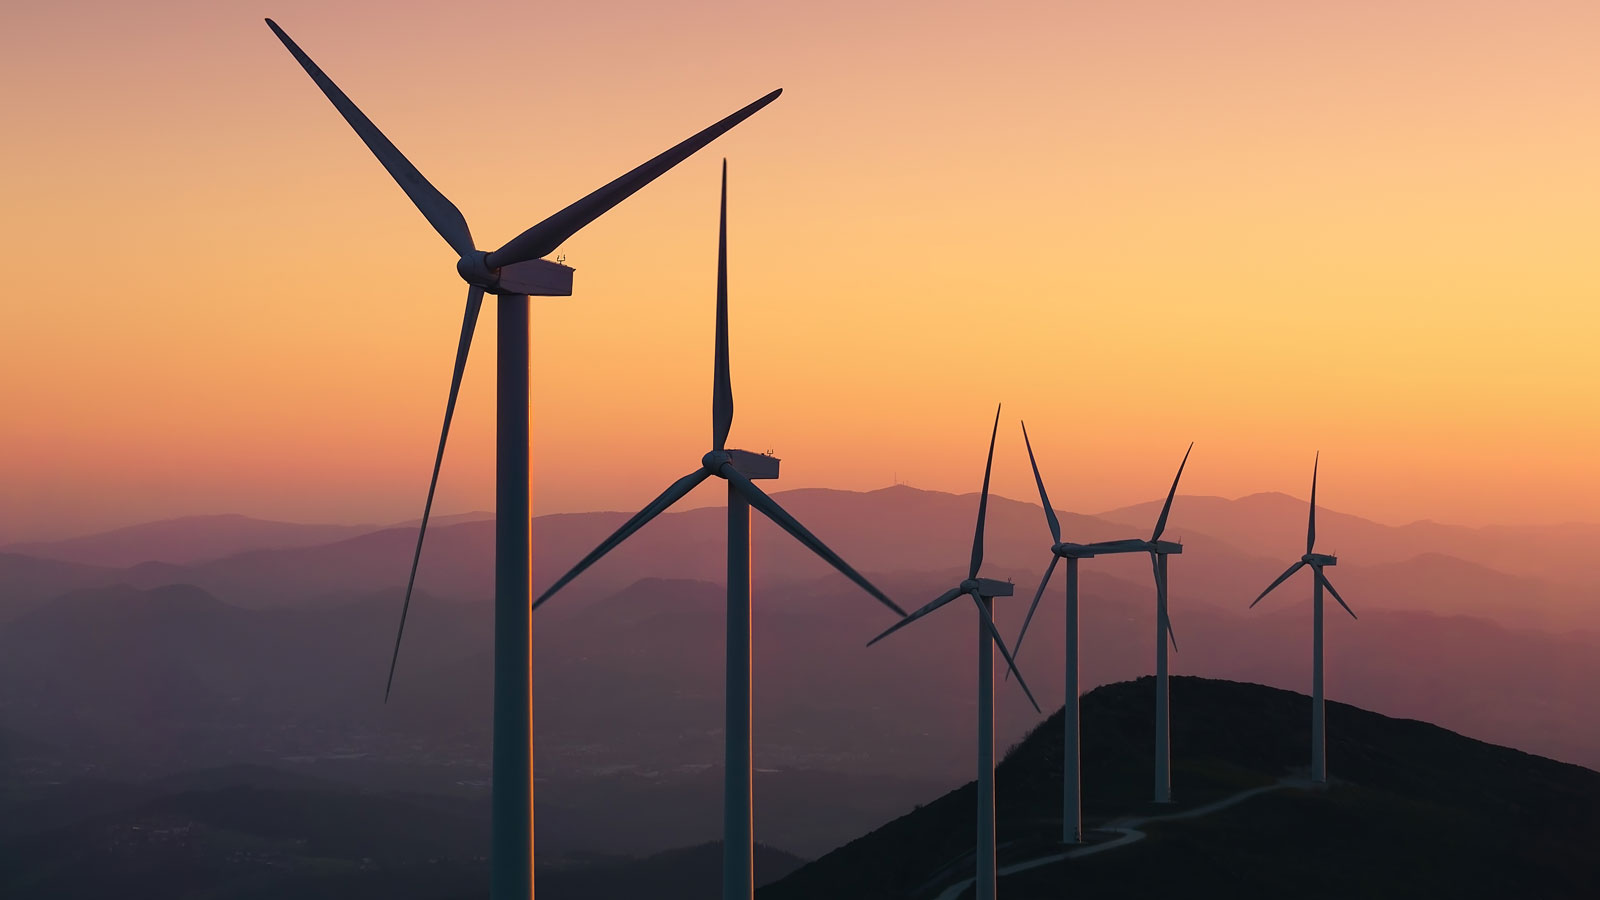 Climatempo lança plataforma de previsão de vento e geração eólica